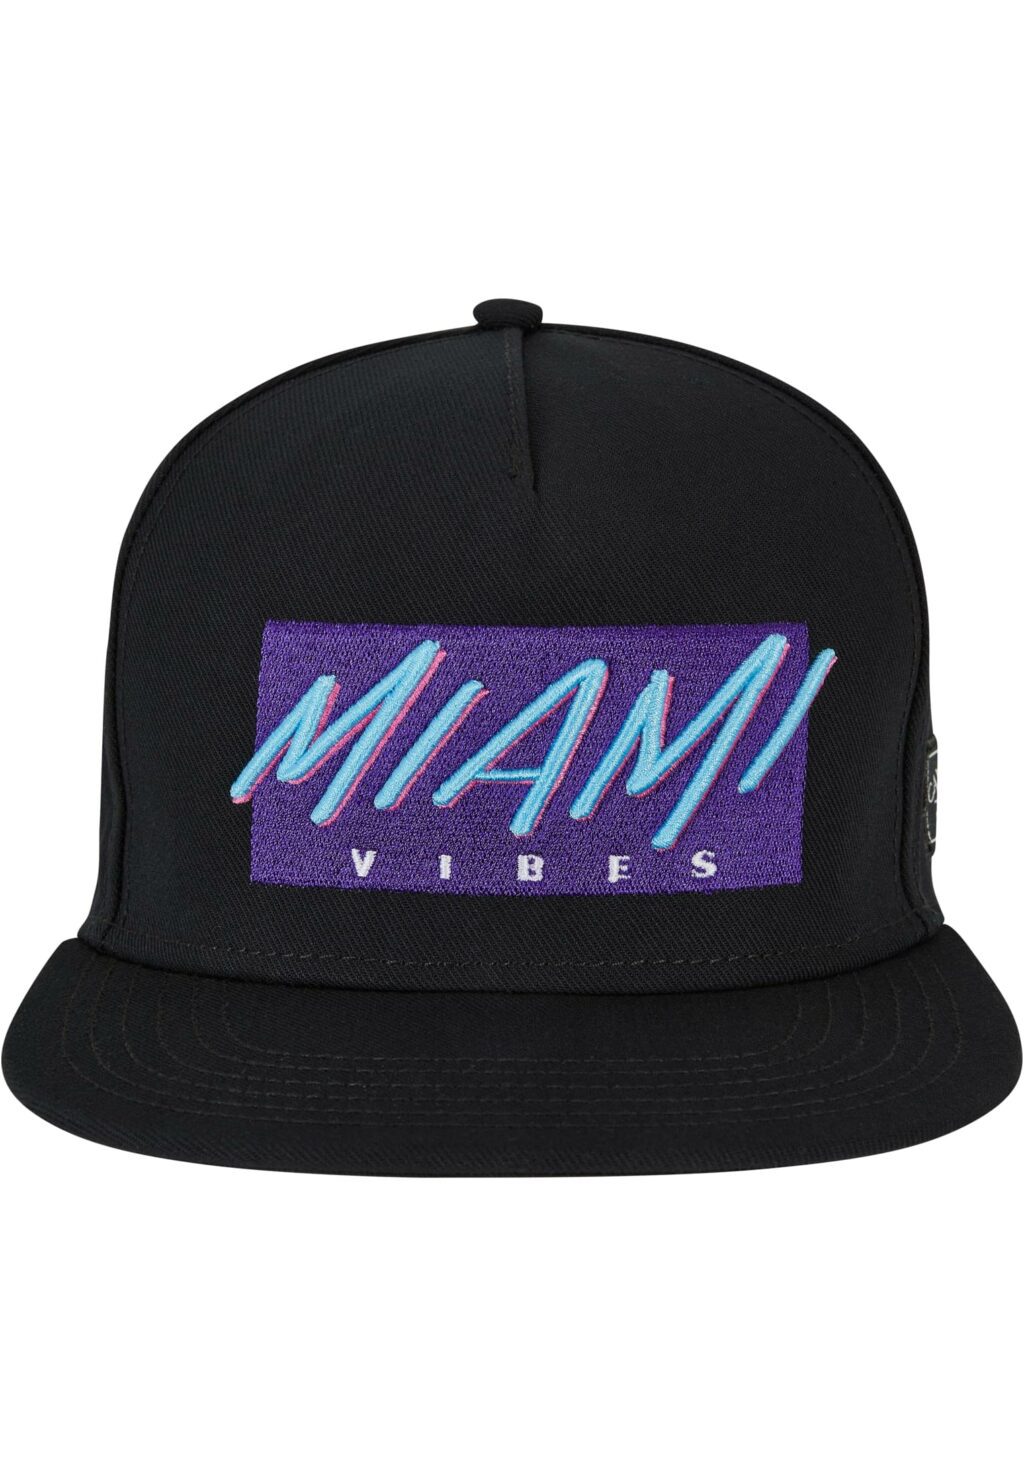 Miami Vibes P Cap black one CS3090